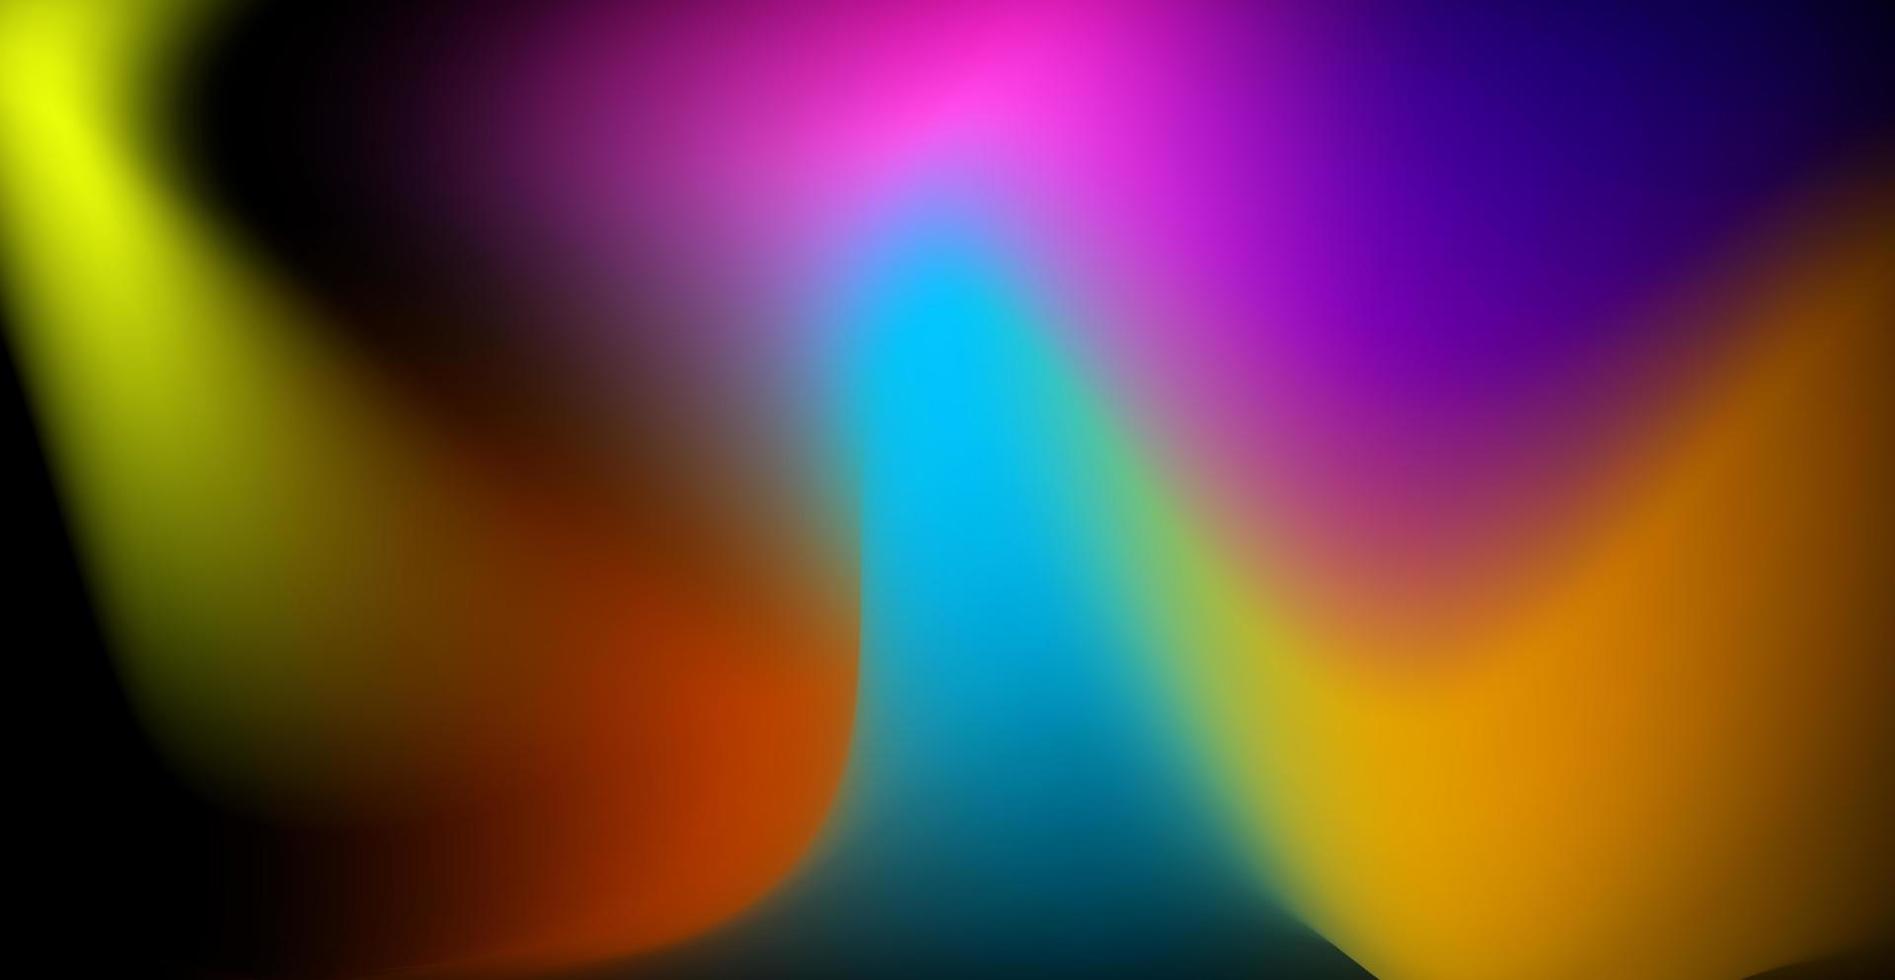 abstrakt bunt Rosa, lila, orange, Blau, Gelb holographisch Gittergewebe wellig Textur Hintergrund. eps10 Vektor